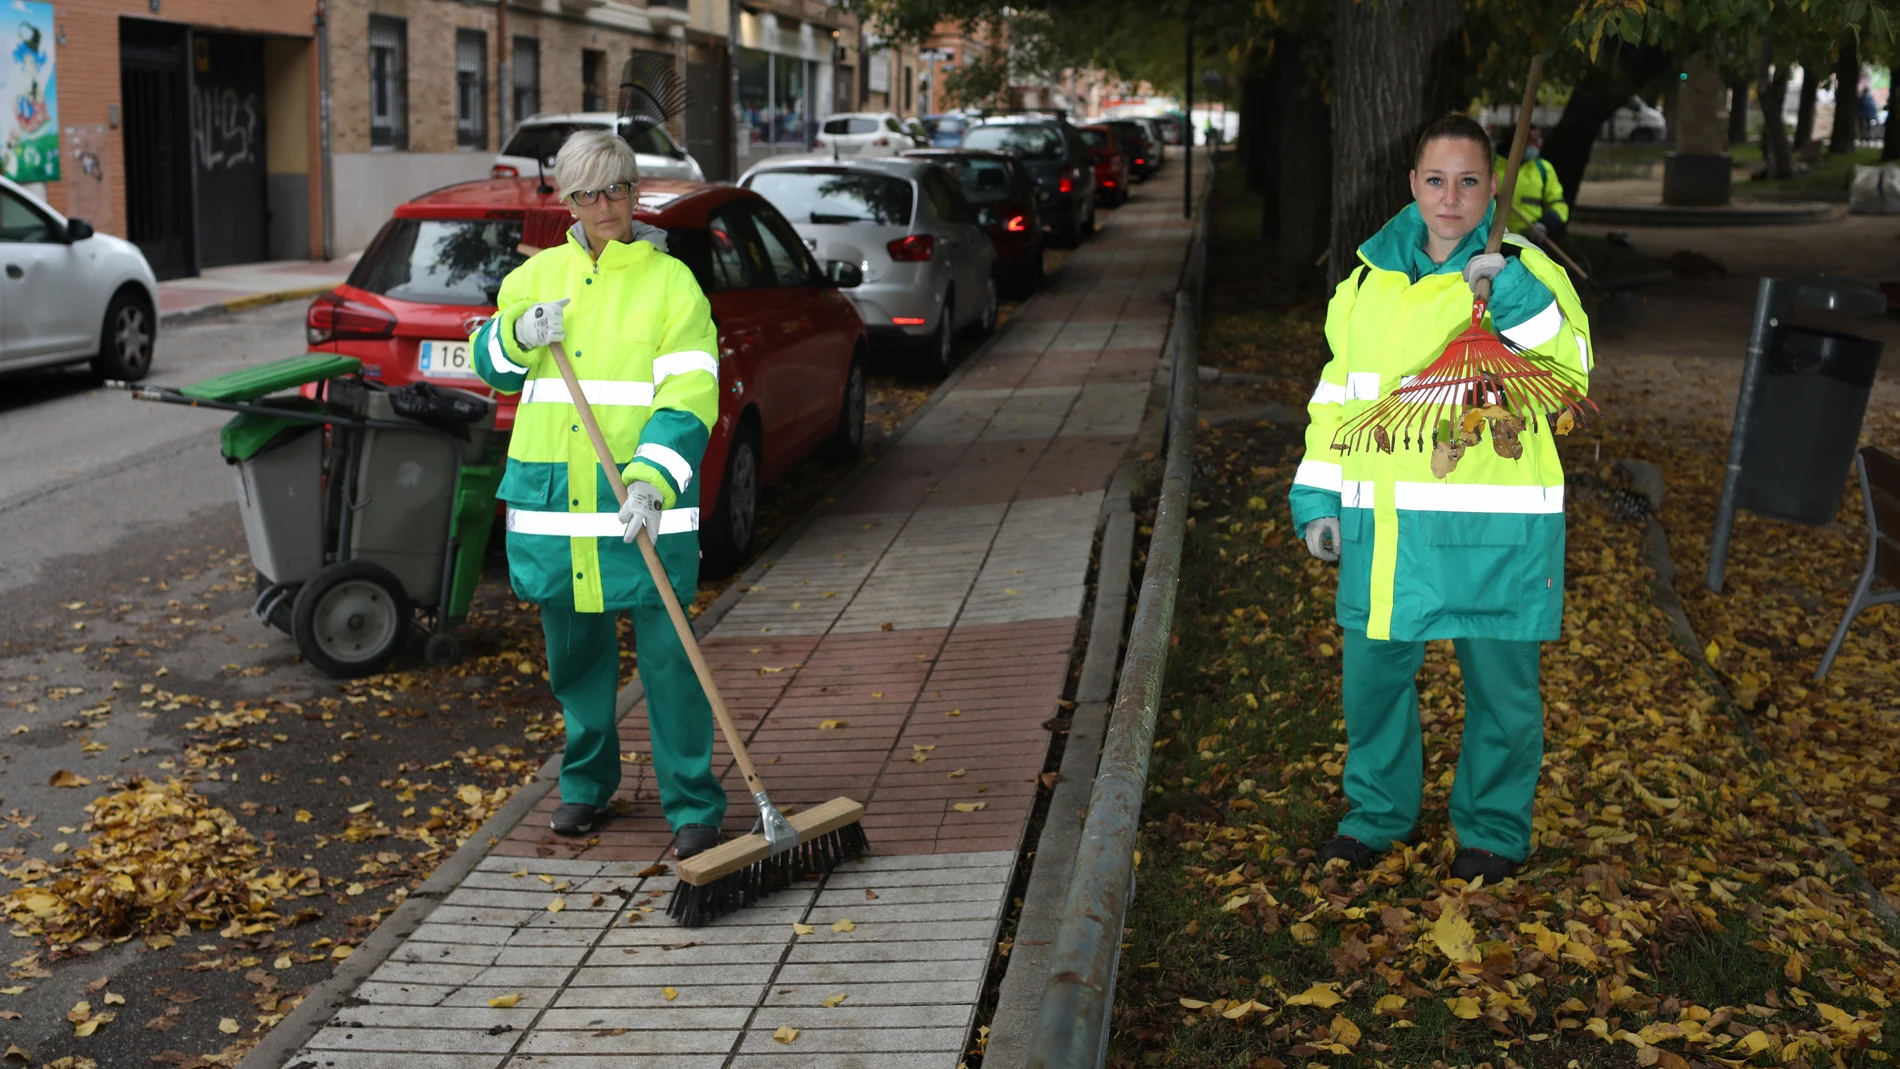 Ruth y Anaís son dos de las 14 mujeres contratadas por el Ayuntamiento de Humanes para realizar labores de limpieza y jardinería en un equipo de 20 personas rescatadas de situaciones de paro de larga duración.